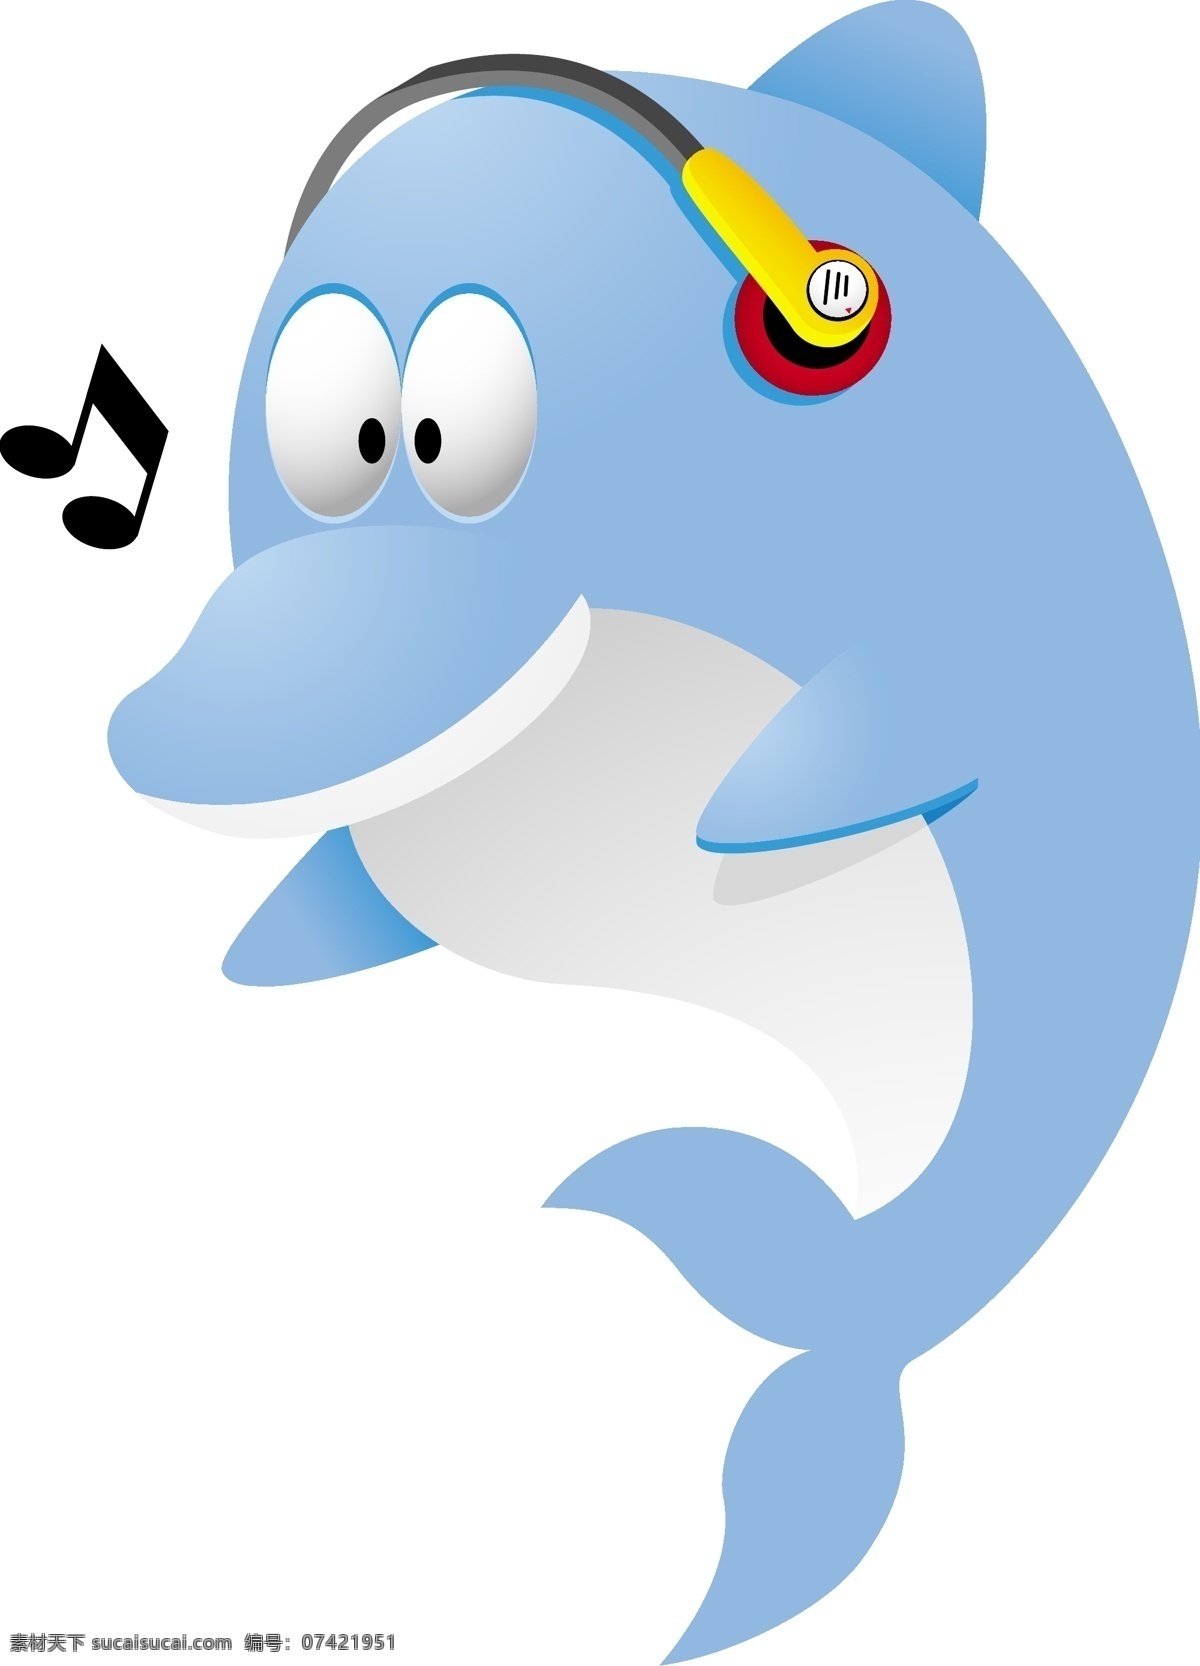 听 音乐 海豚 gg 漫画 动画 可爱 卡通 动漫 儿童 卡挖依 麦克风 生物世界 海洋生物 矢量图库